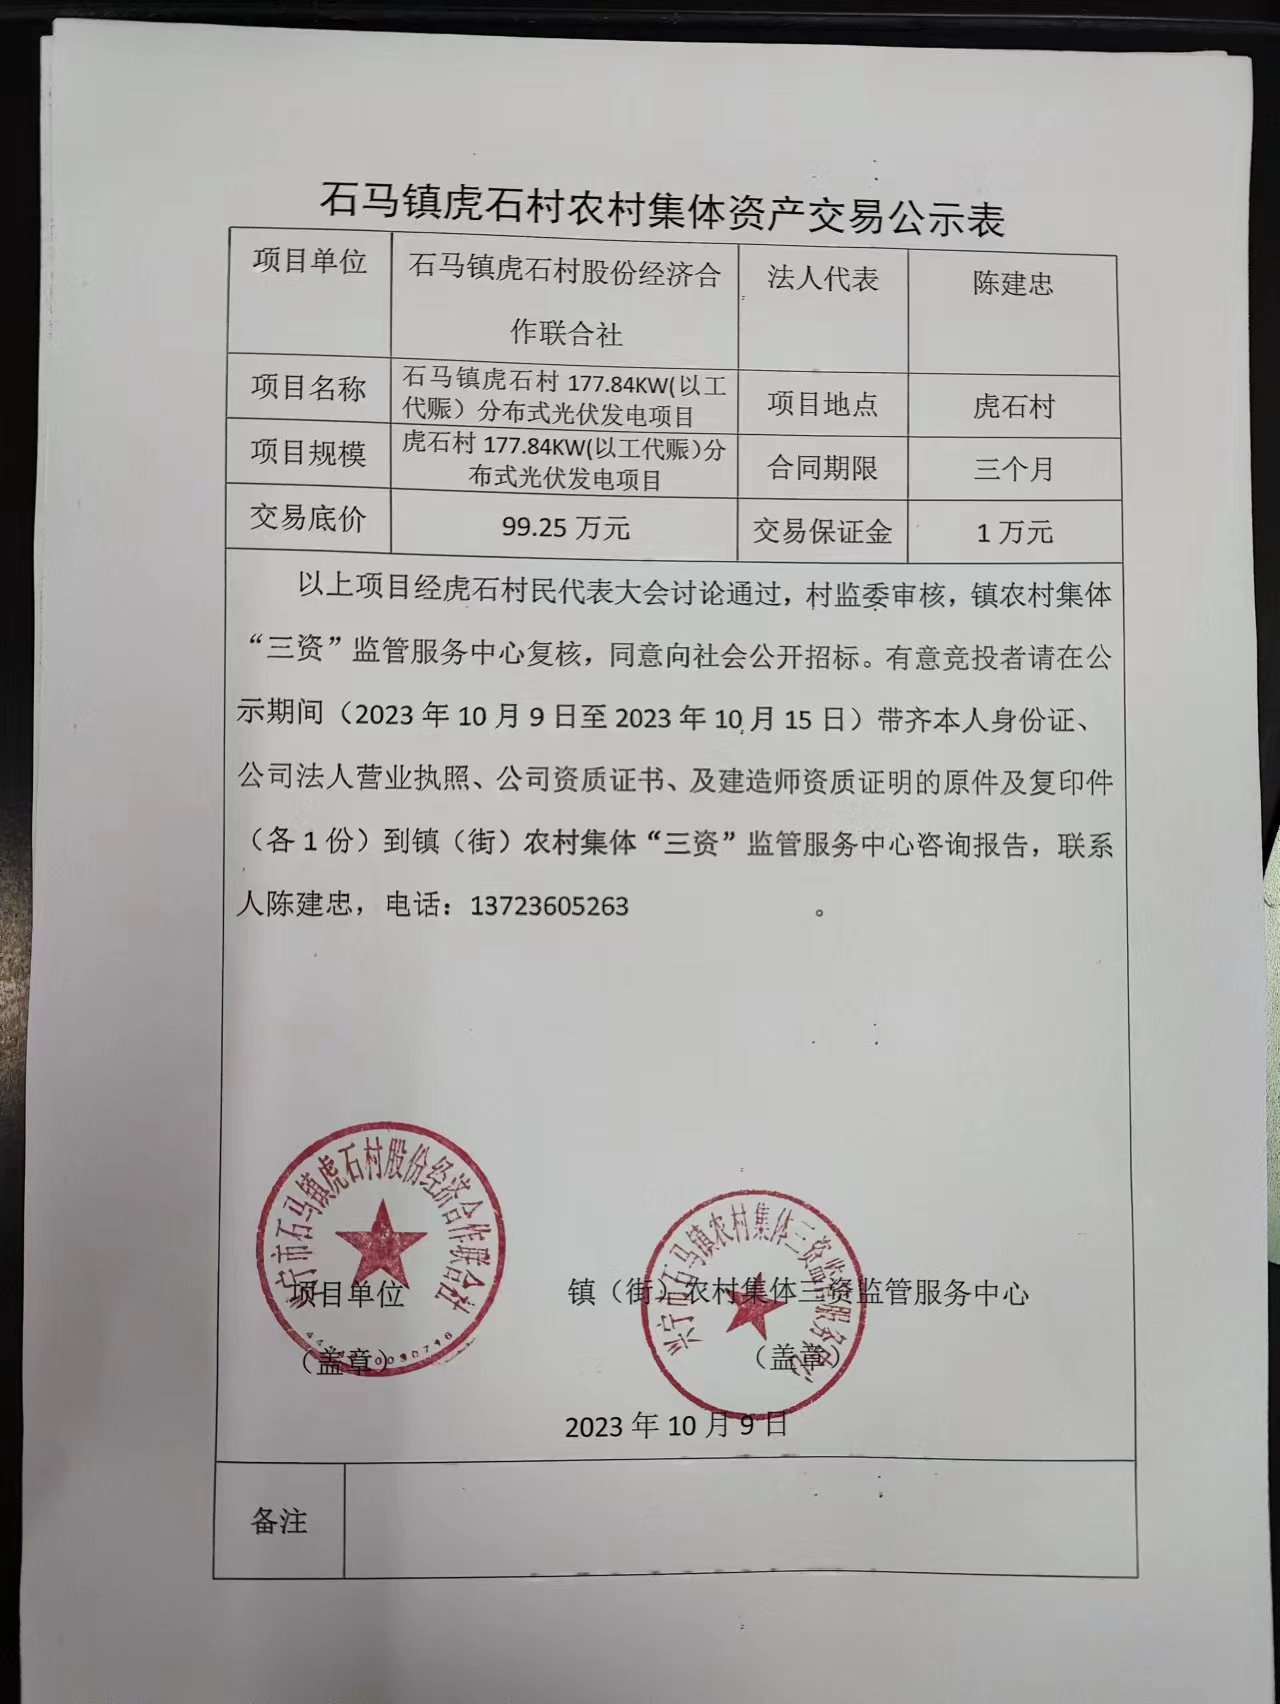 石马镇虎石村农村集体资产交易公示表2023.10.09.jpg